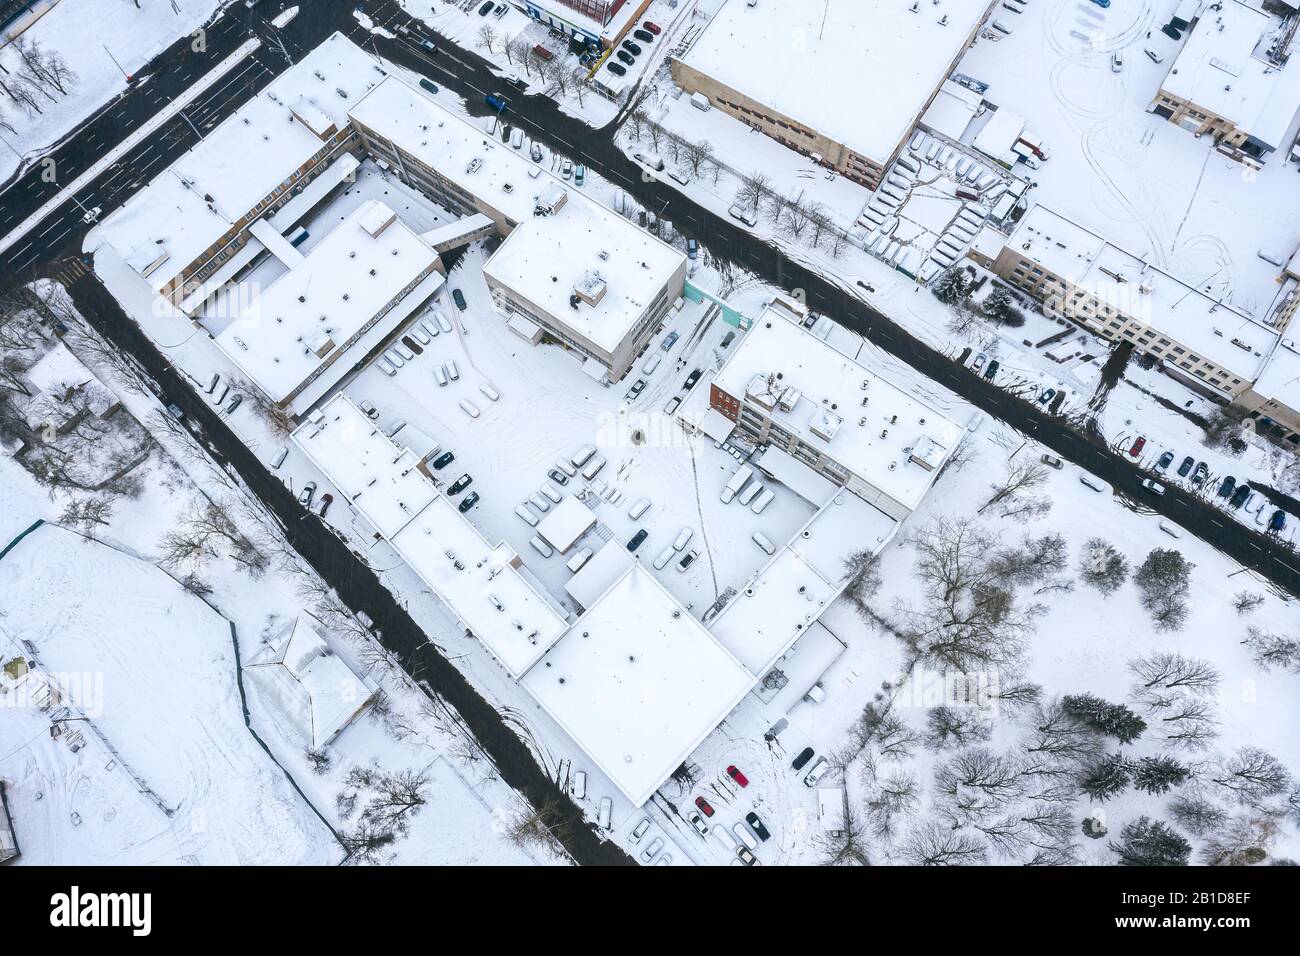 vista dall'alto dell'area industriale della città in inverno. numerosi impianti industriali e magazzini Foto Stock